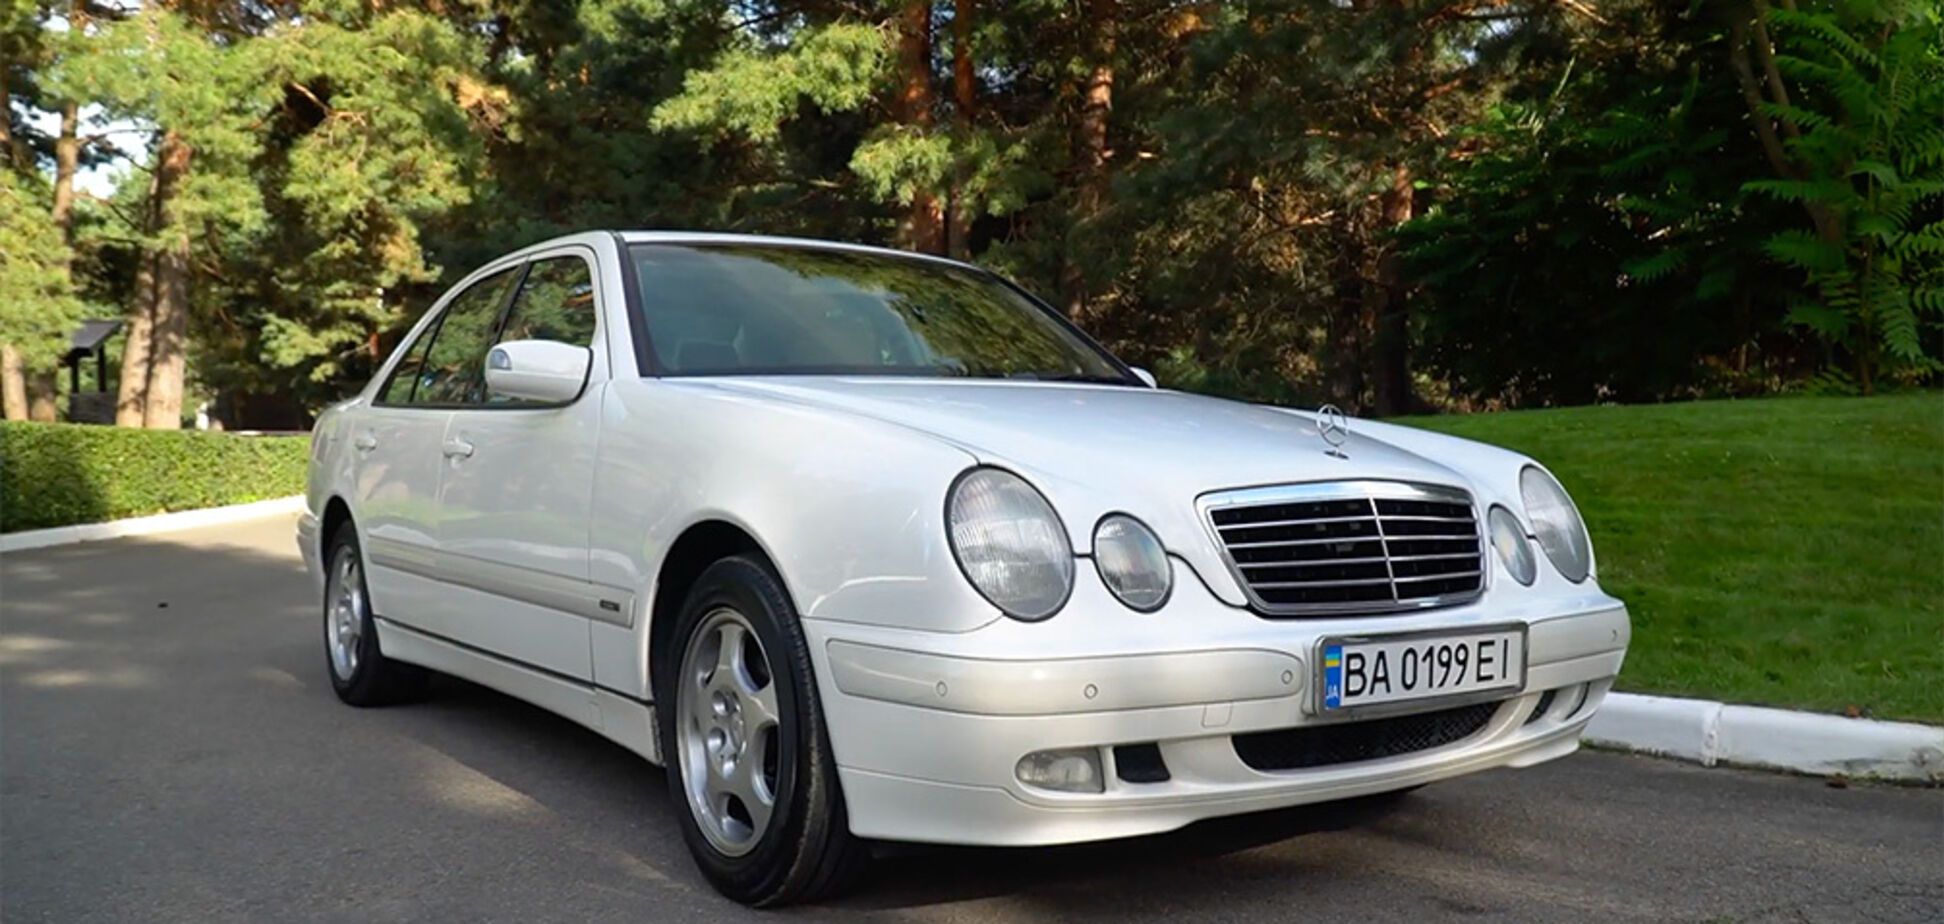 Українець пригнав із Японії ідеальний Mercedes за ціною 'битка' зі США